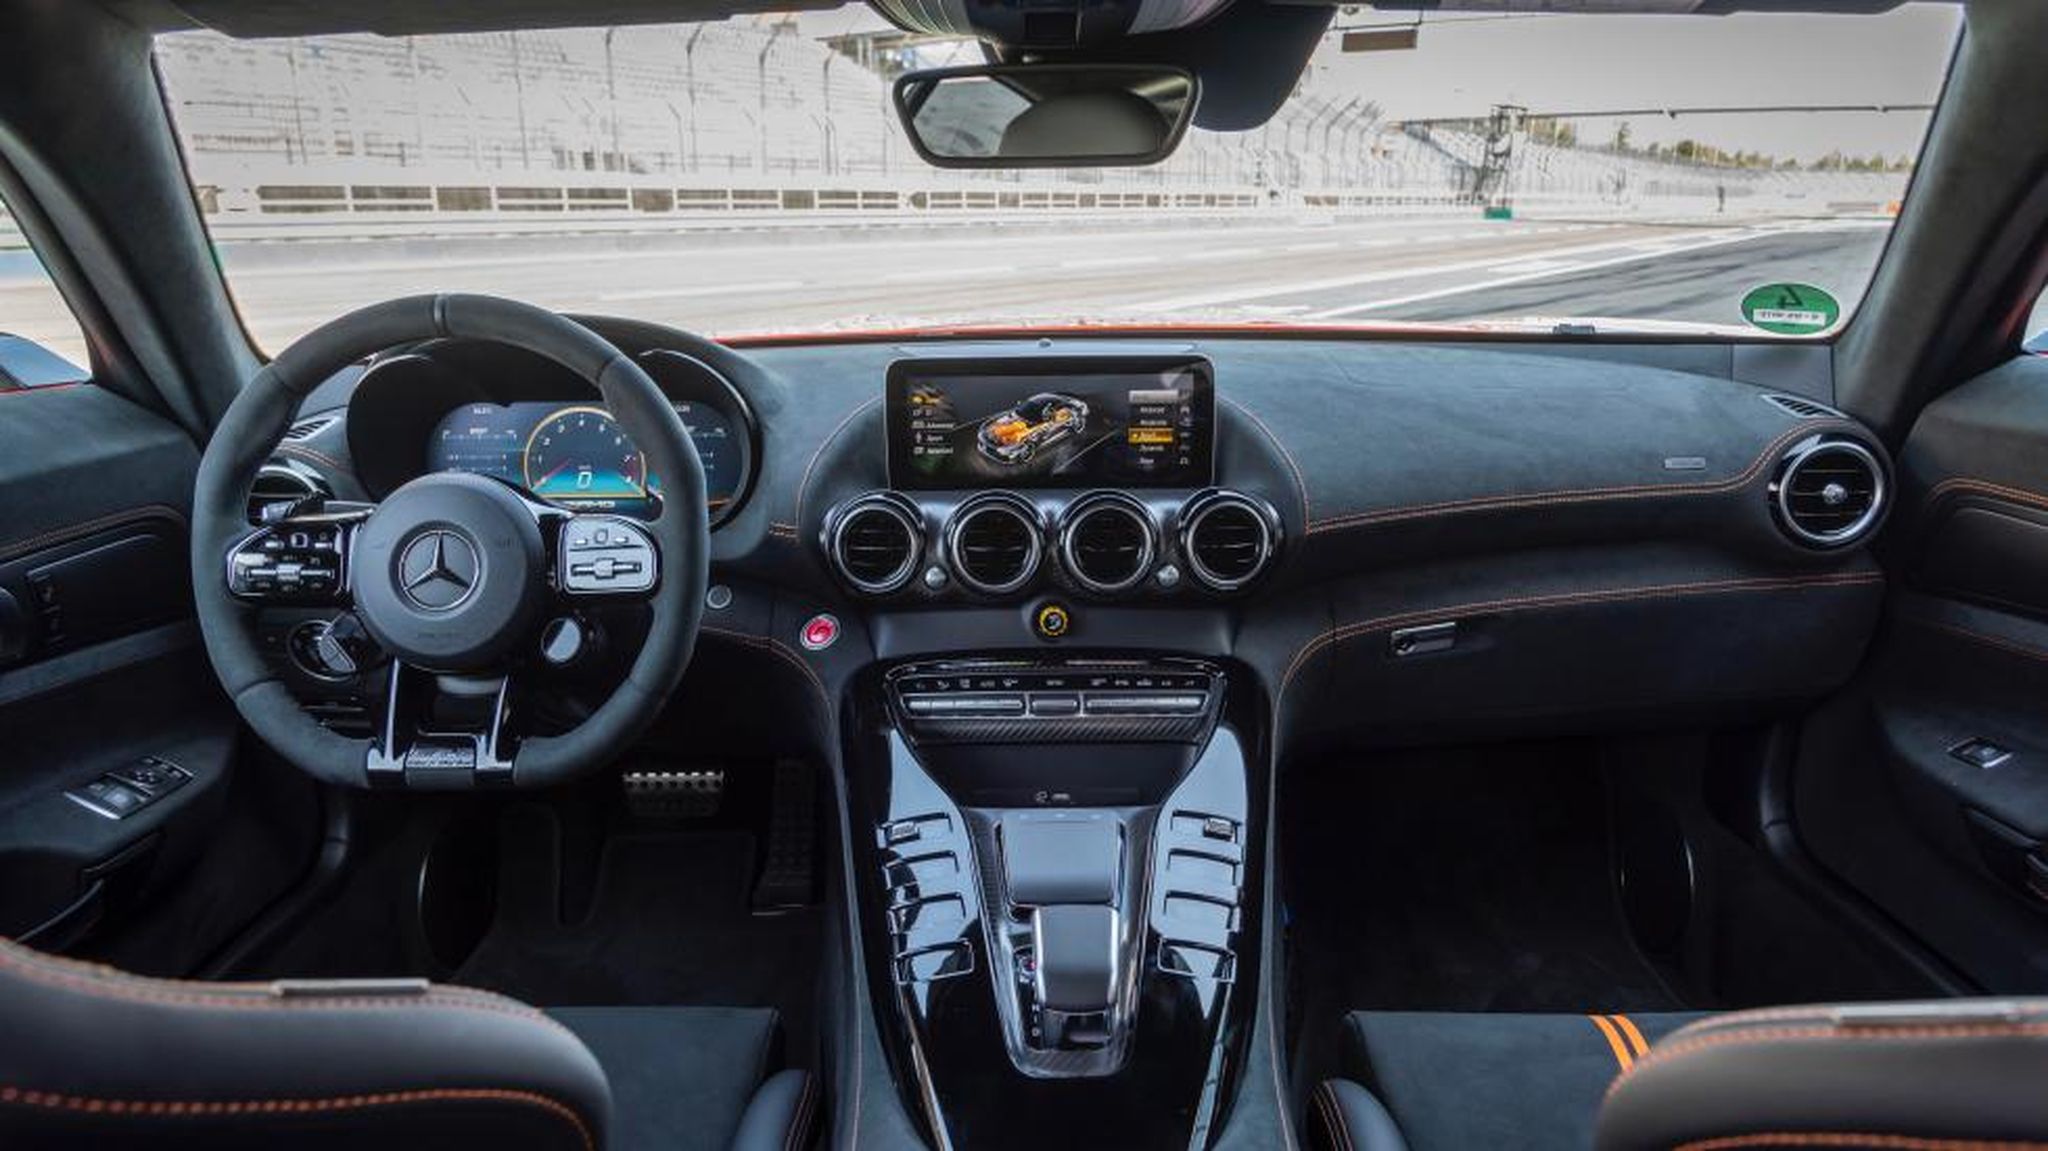 Galería: interior del Mercedes AMG GT R Black Series